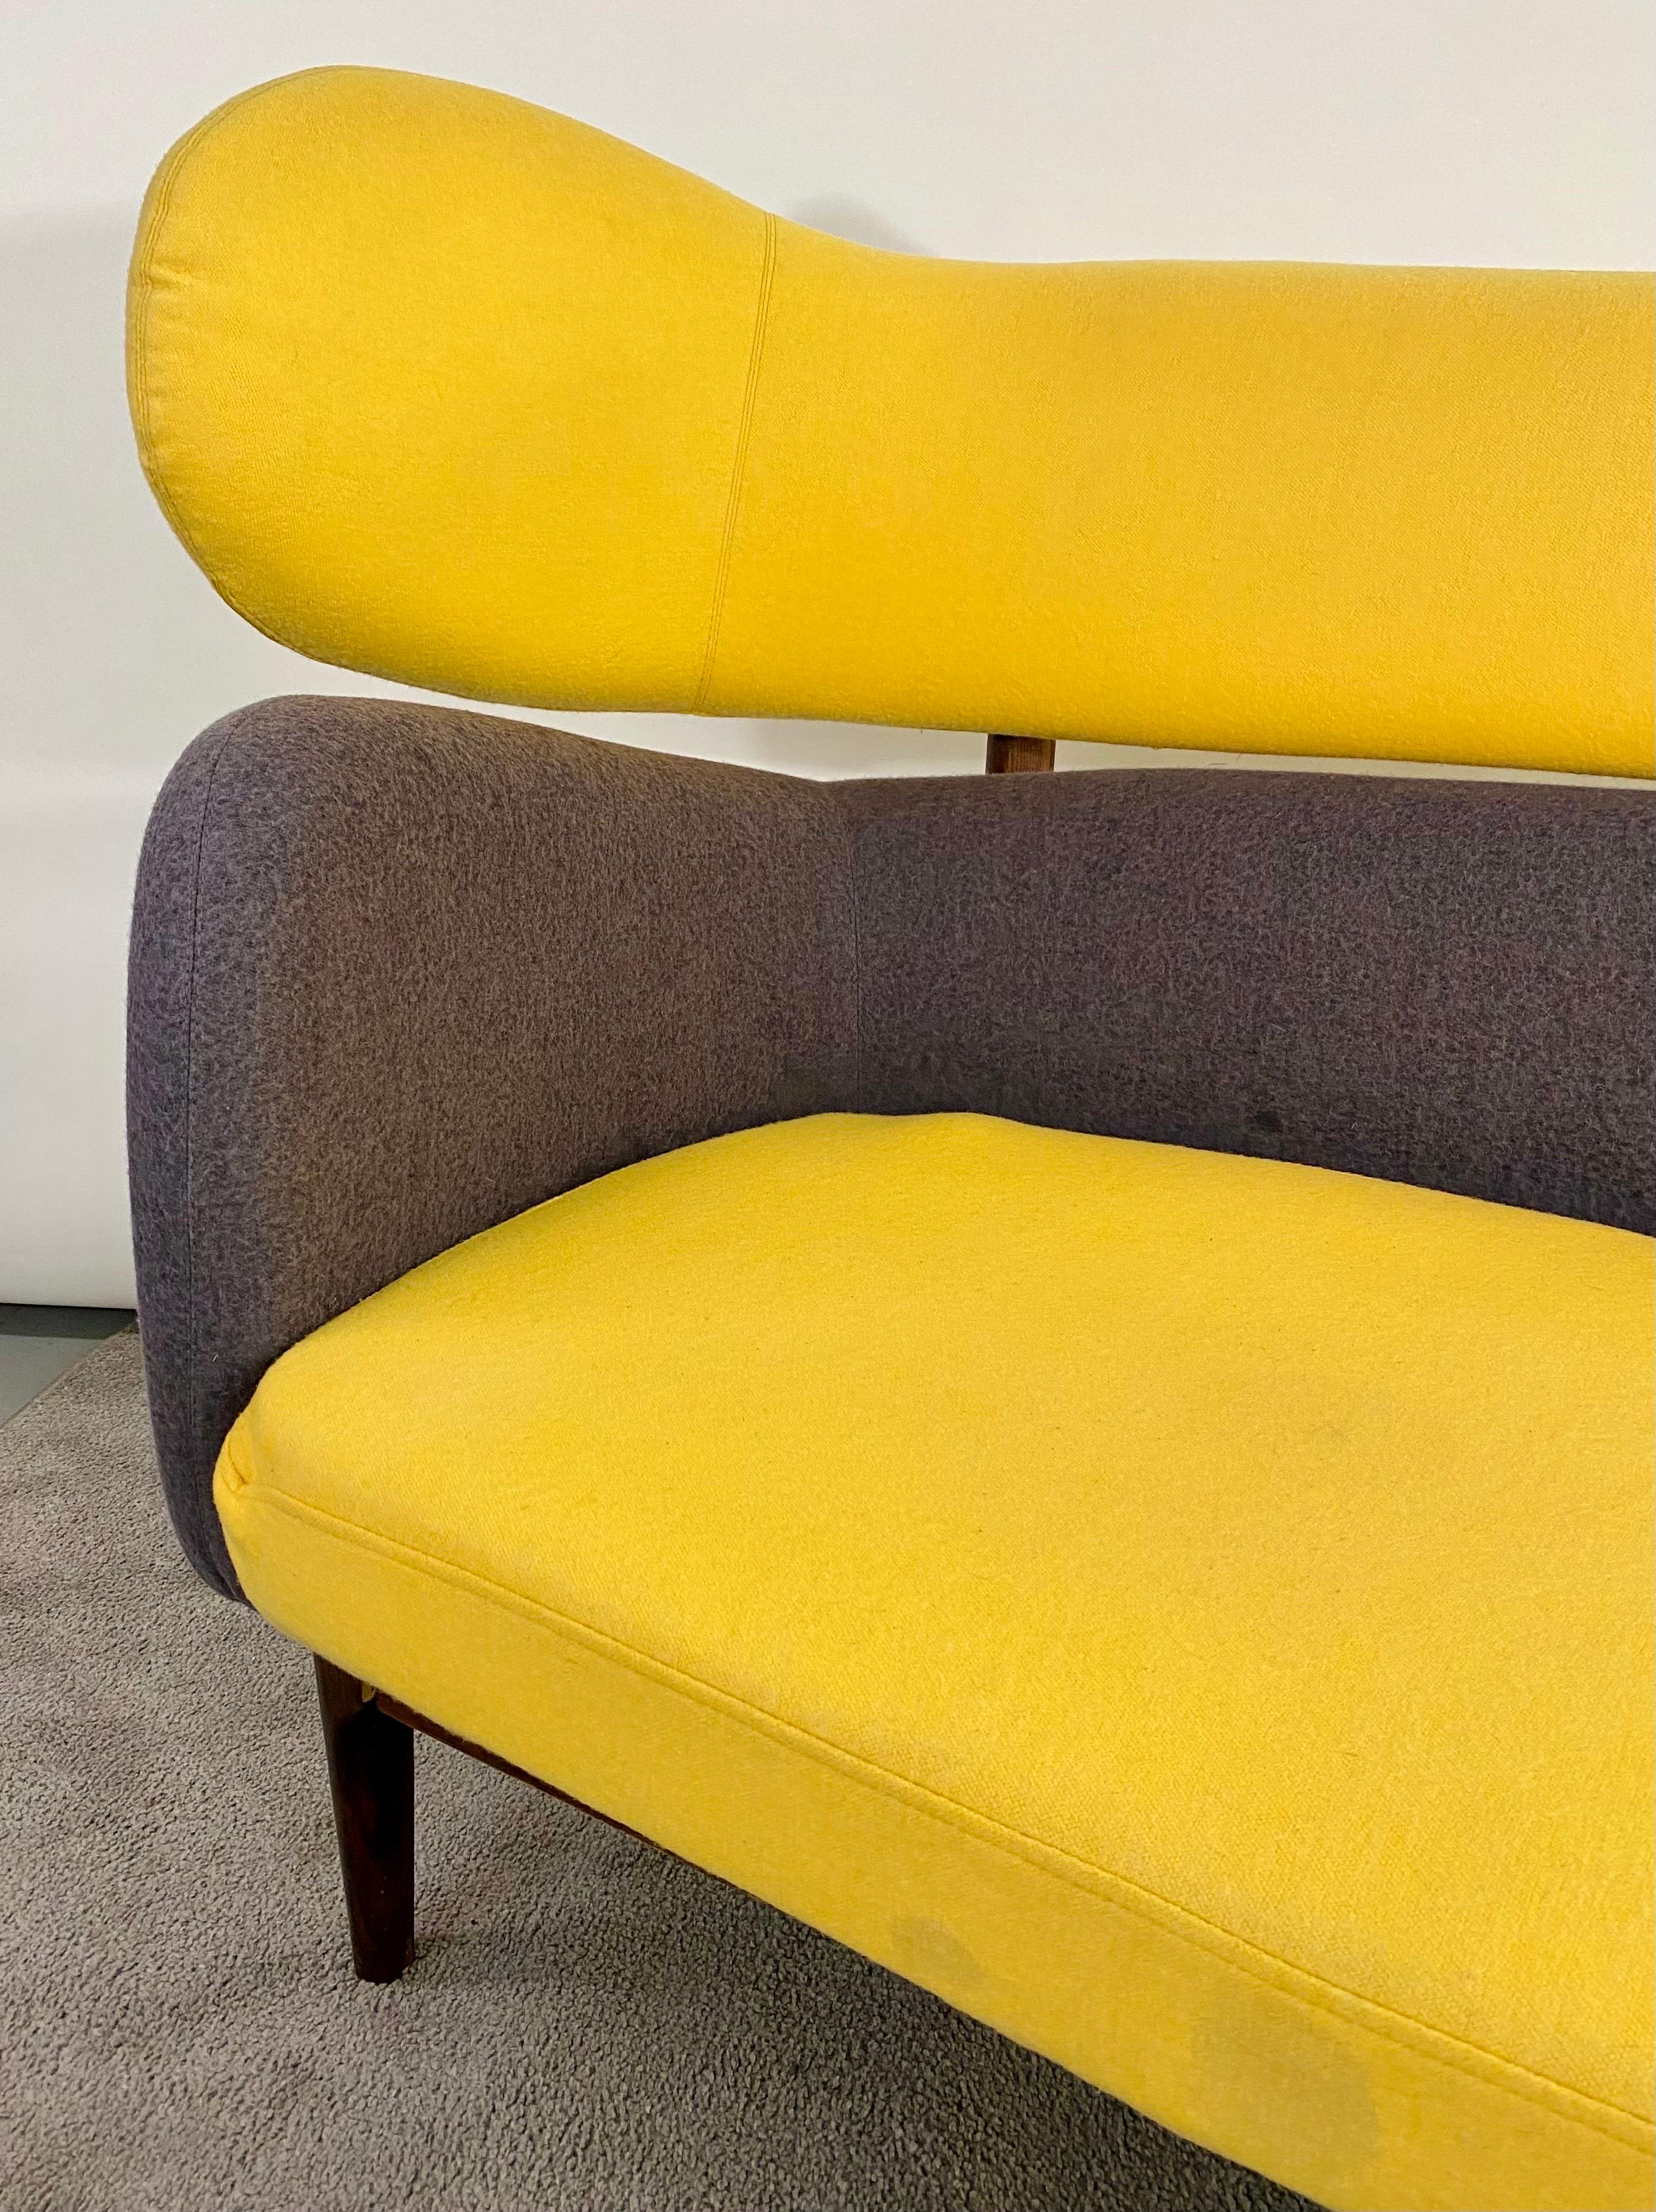 Ein zeitloses Mid-Century Modern Sofa, das dem  Finn Juhl ( Dänisch 1912- 1989) für Baker. Das Sofa hat eine skulpturale Form, die von der modernen freien Kunst inspiriert ist. Die Sitzfläche und die Rückenlehne des Sofas sind voneinander getrennt